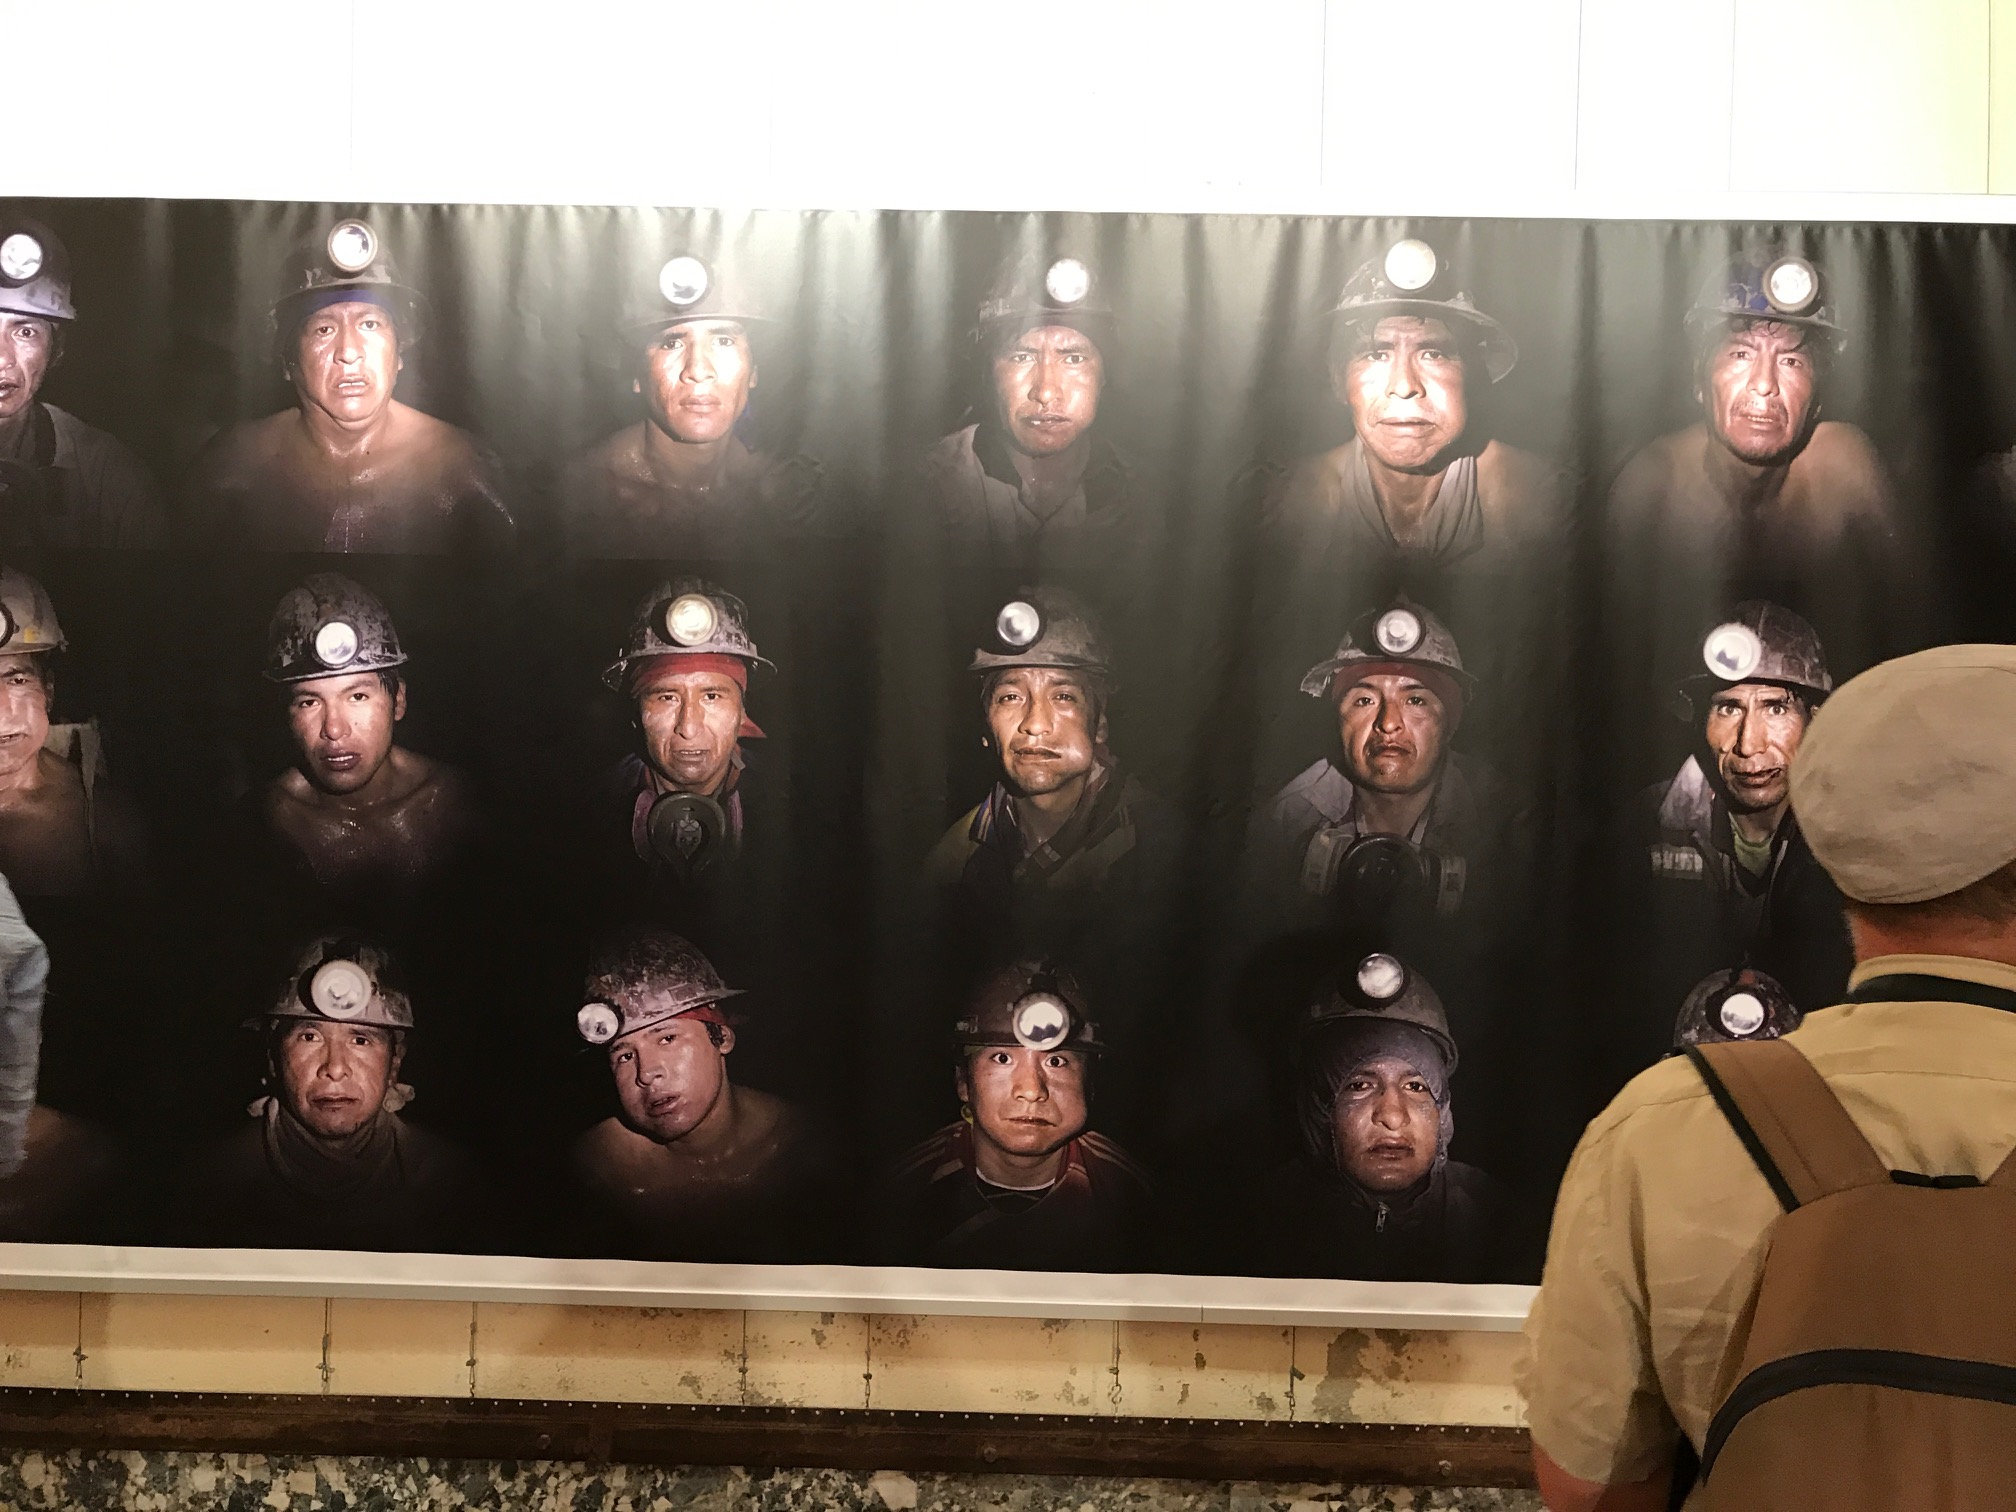 Exposició sobre els miners de Potosí (Bolívia) al Convent dels Mínims de Perpinyà, dins del Visa pour l'Image